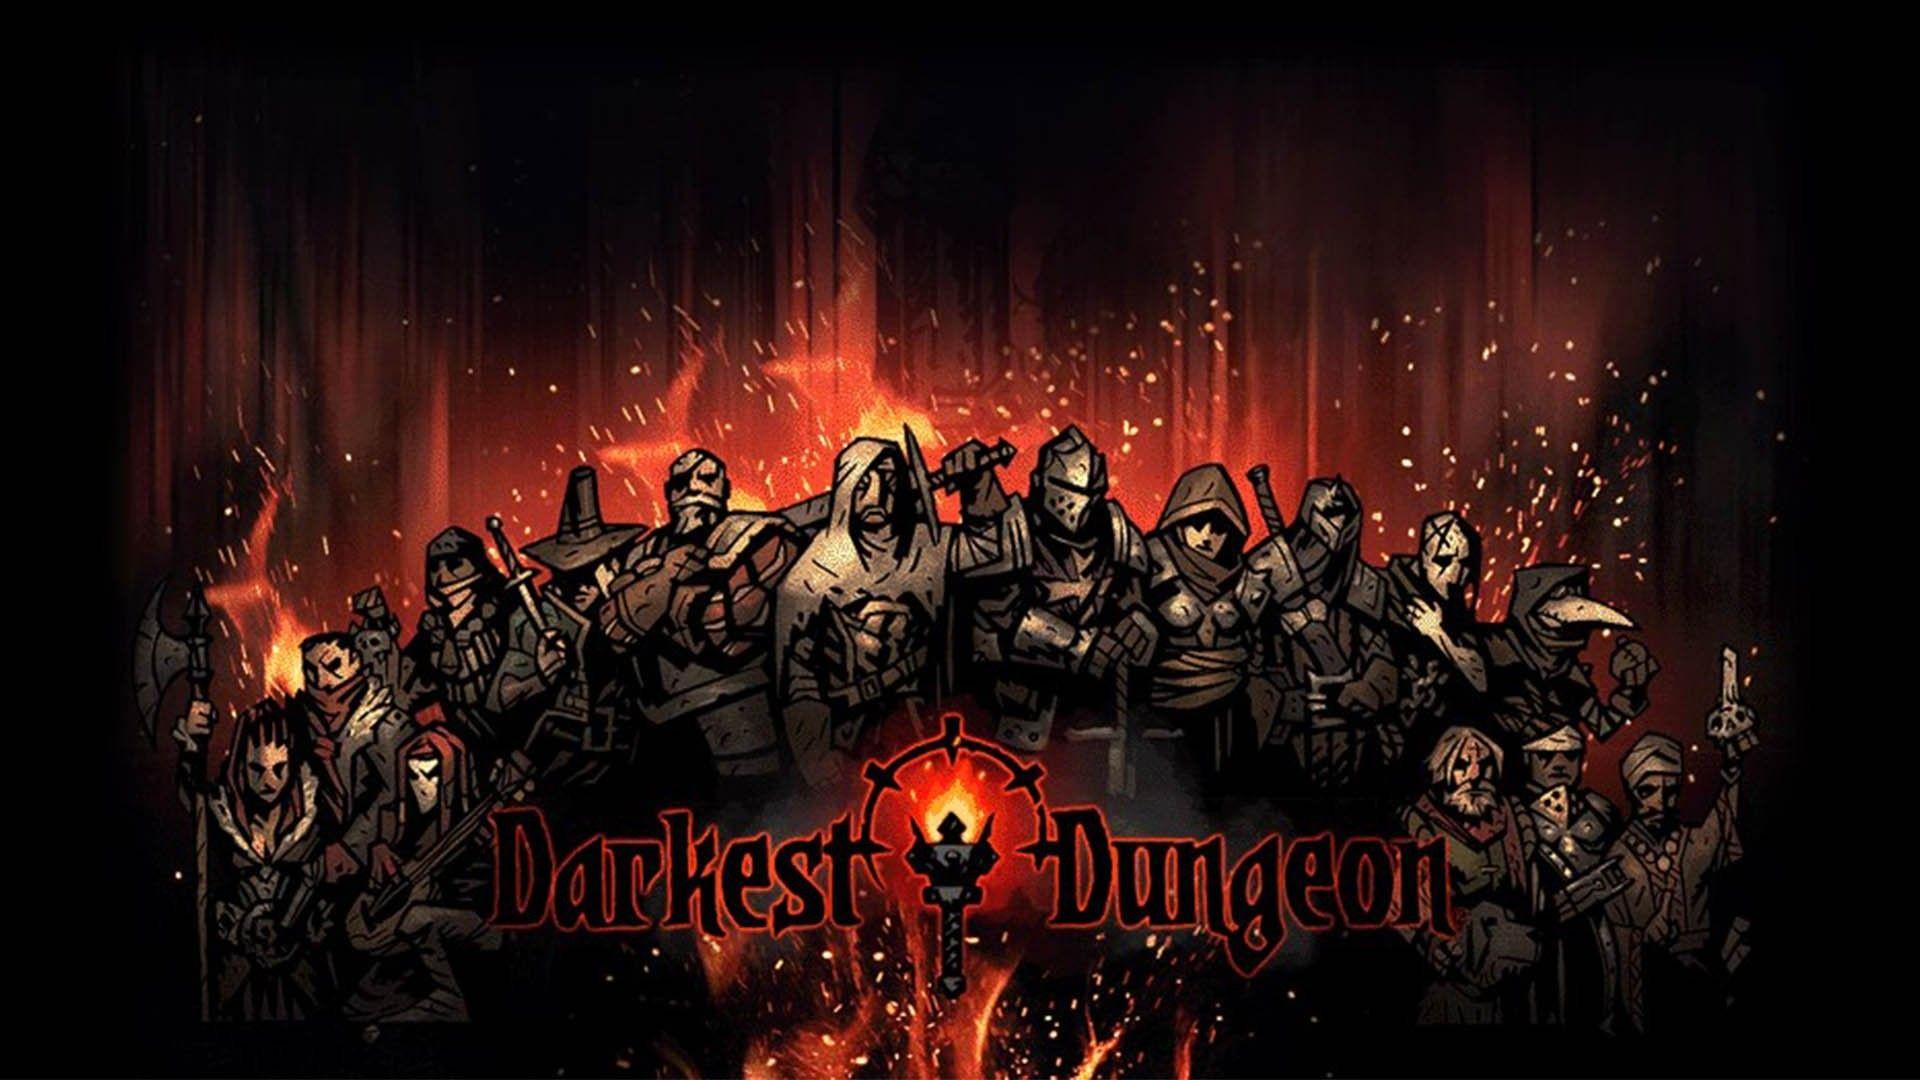 download darkest dungeon 2 steam for free